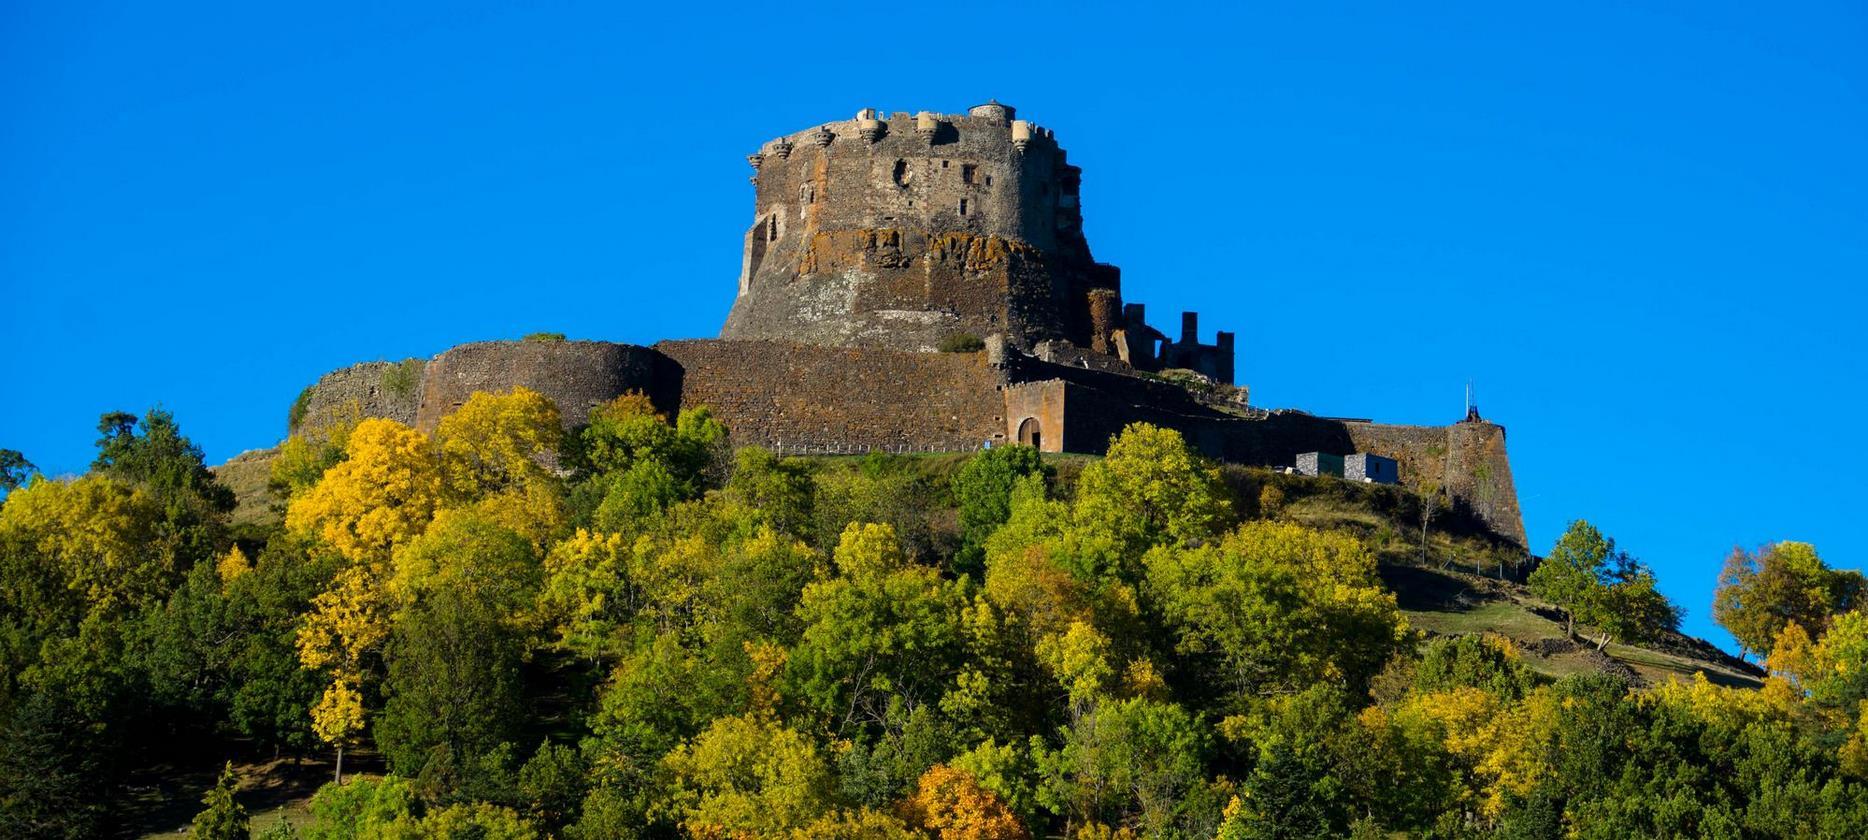 The castle of Murol seen from the Village of Murol in the Puy de Dôme